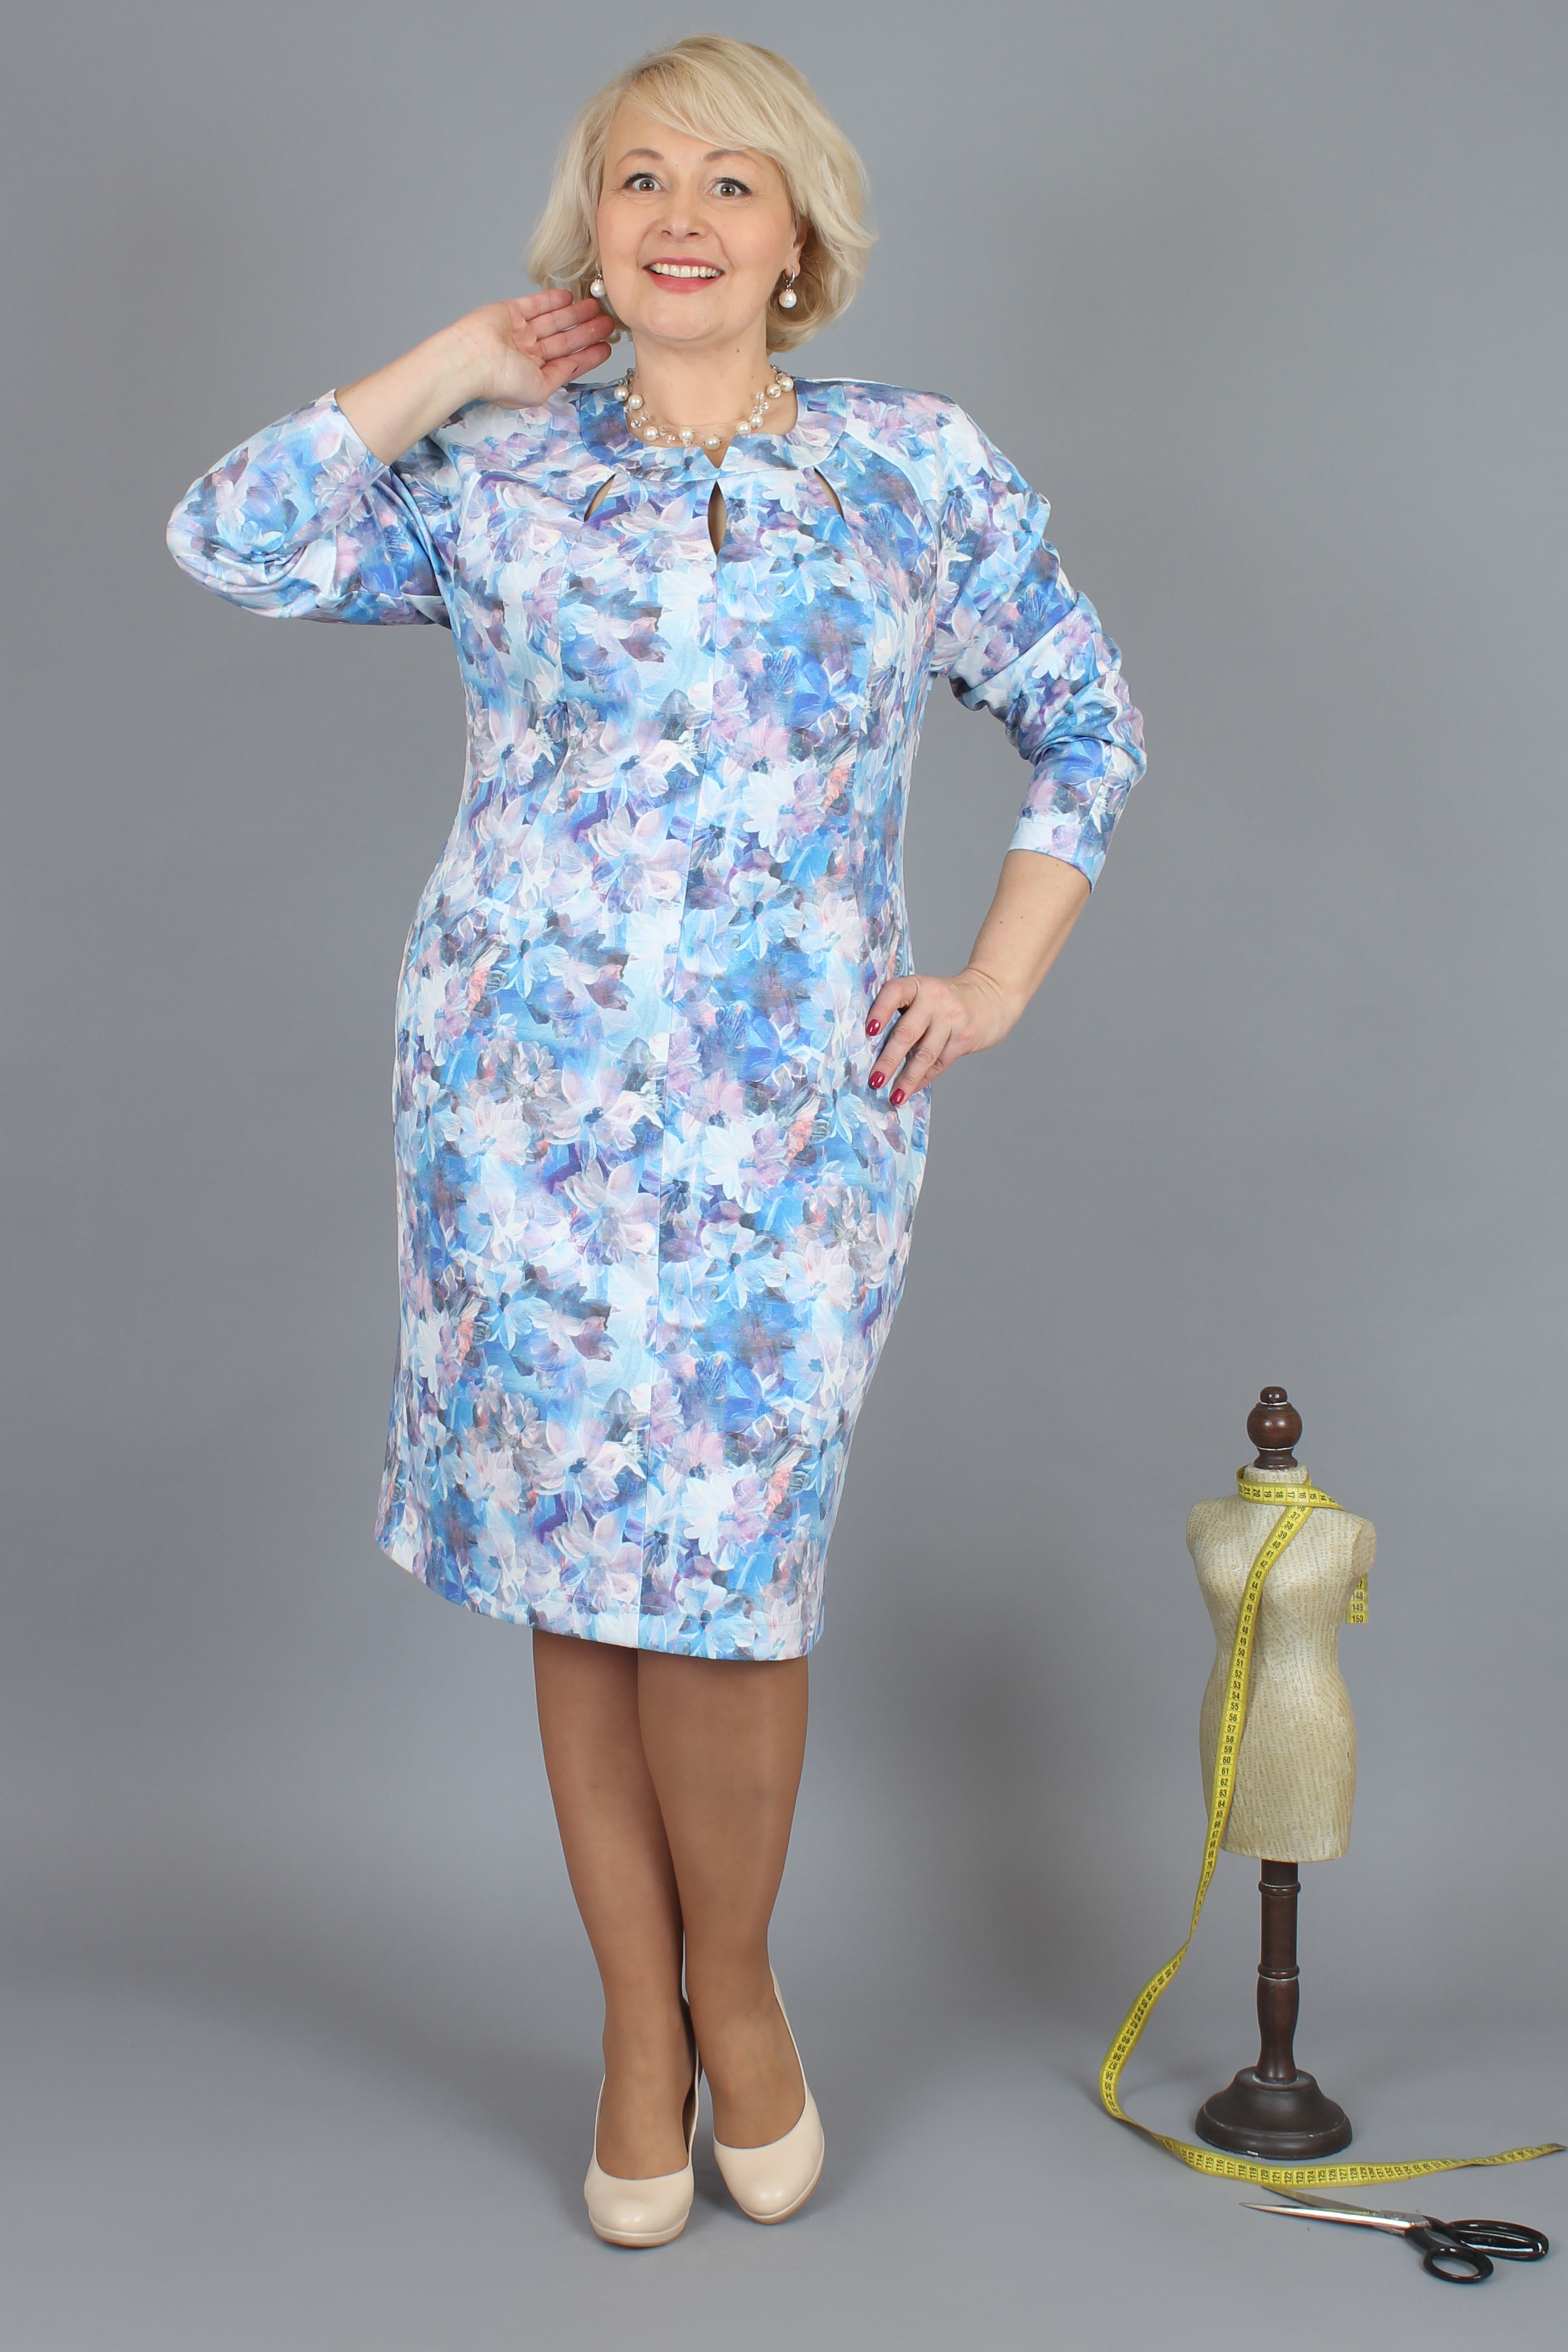 Жіноча сукня NadiN 1308/3 Блакитна 60 р (1308_3_60)